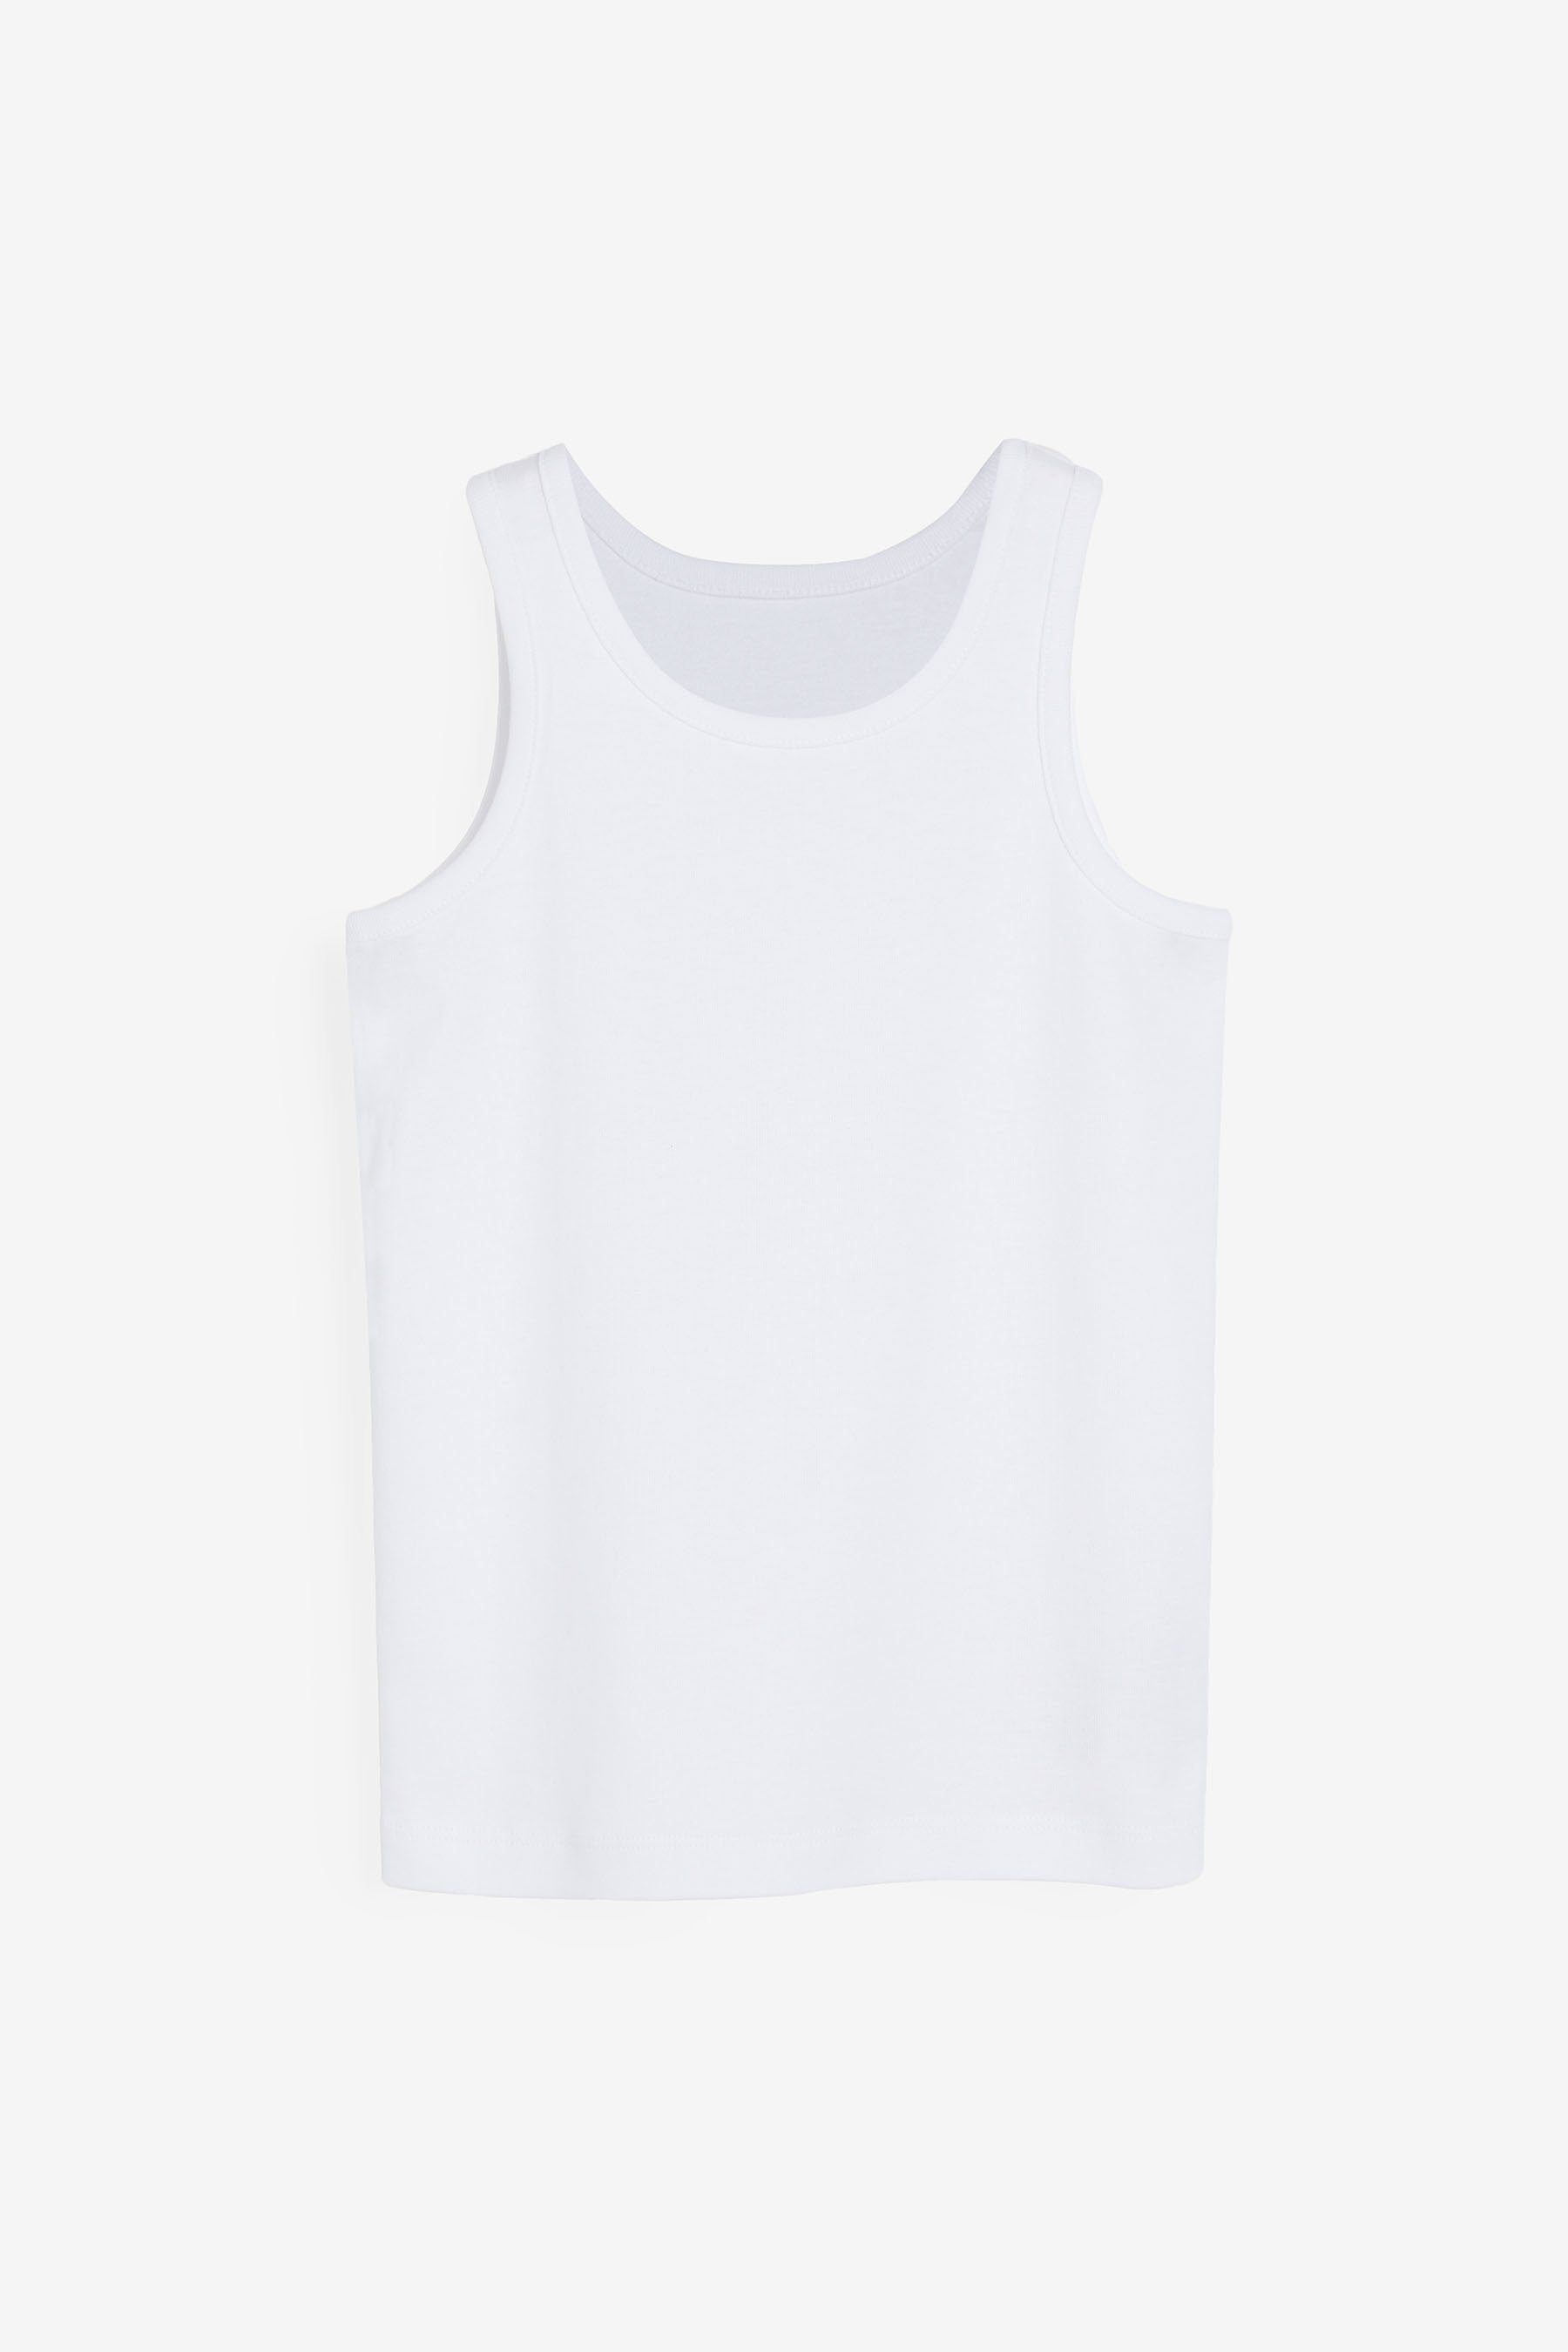 Next Unterhemd Unterhemden White (5-St) aus, 5er-Pack